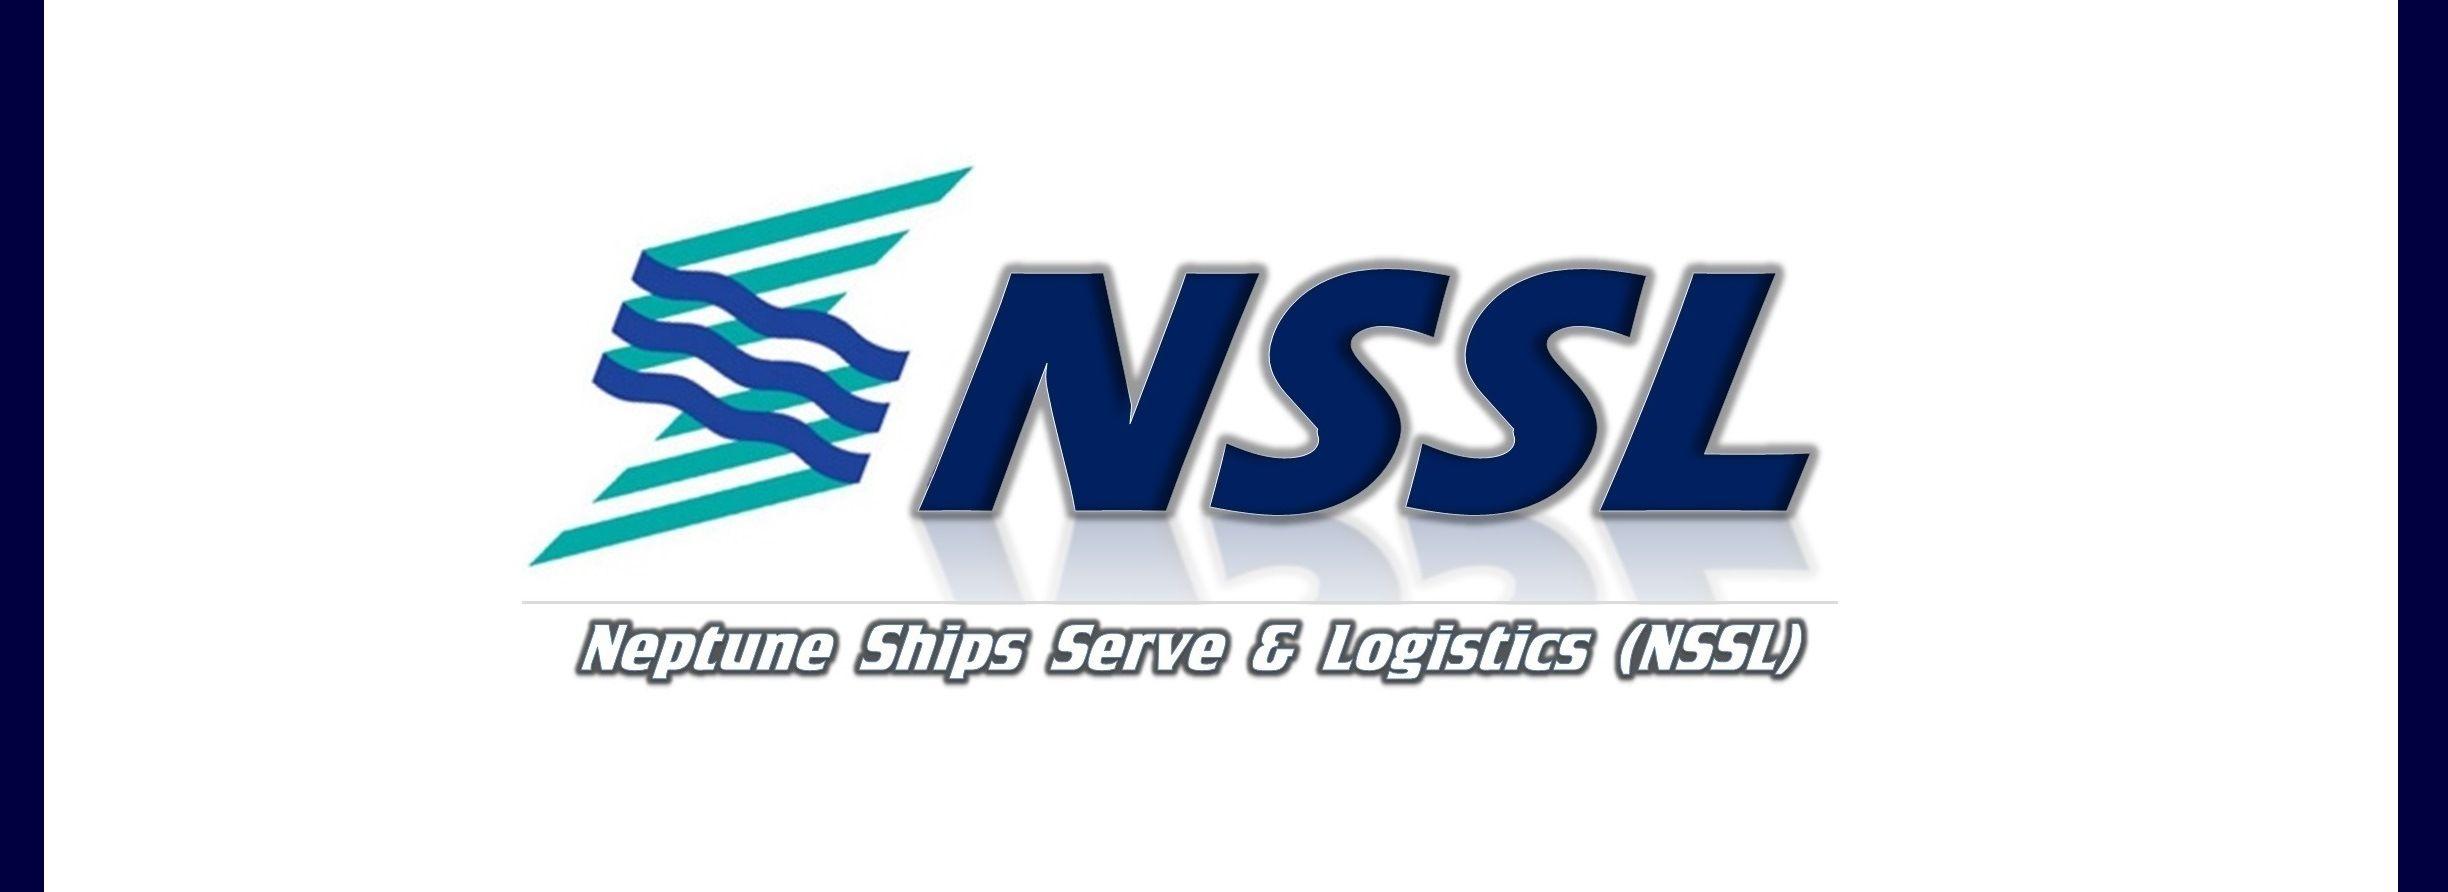 NSSL Logo - NSSL - Neptune Ships Serve & Logistics